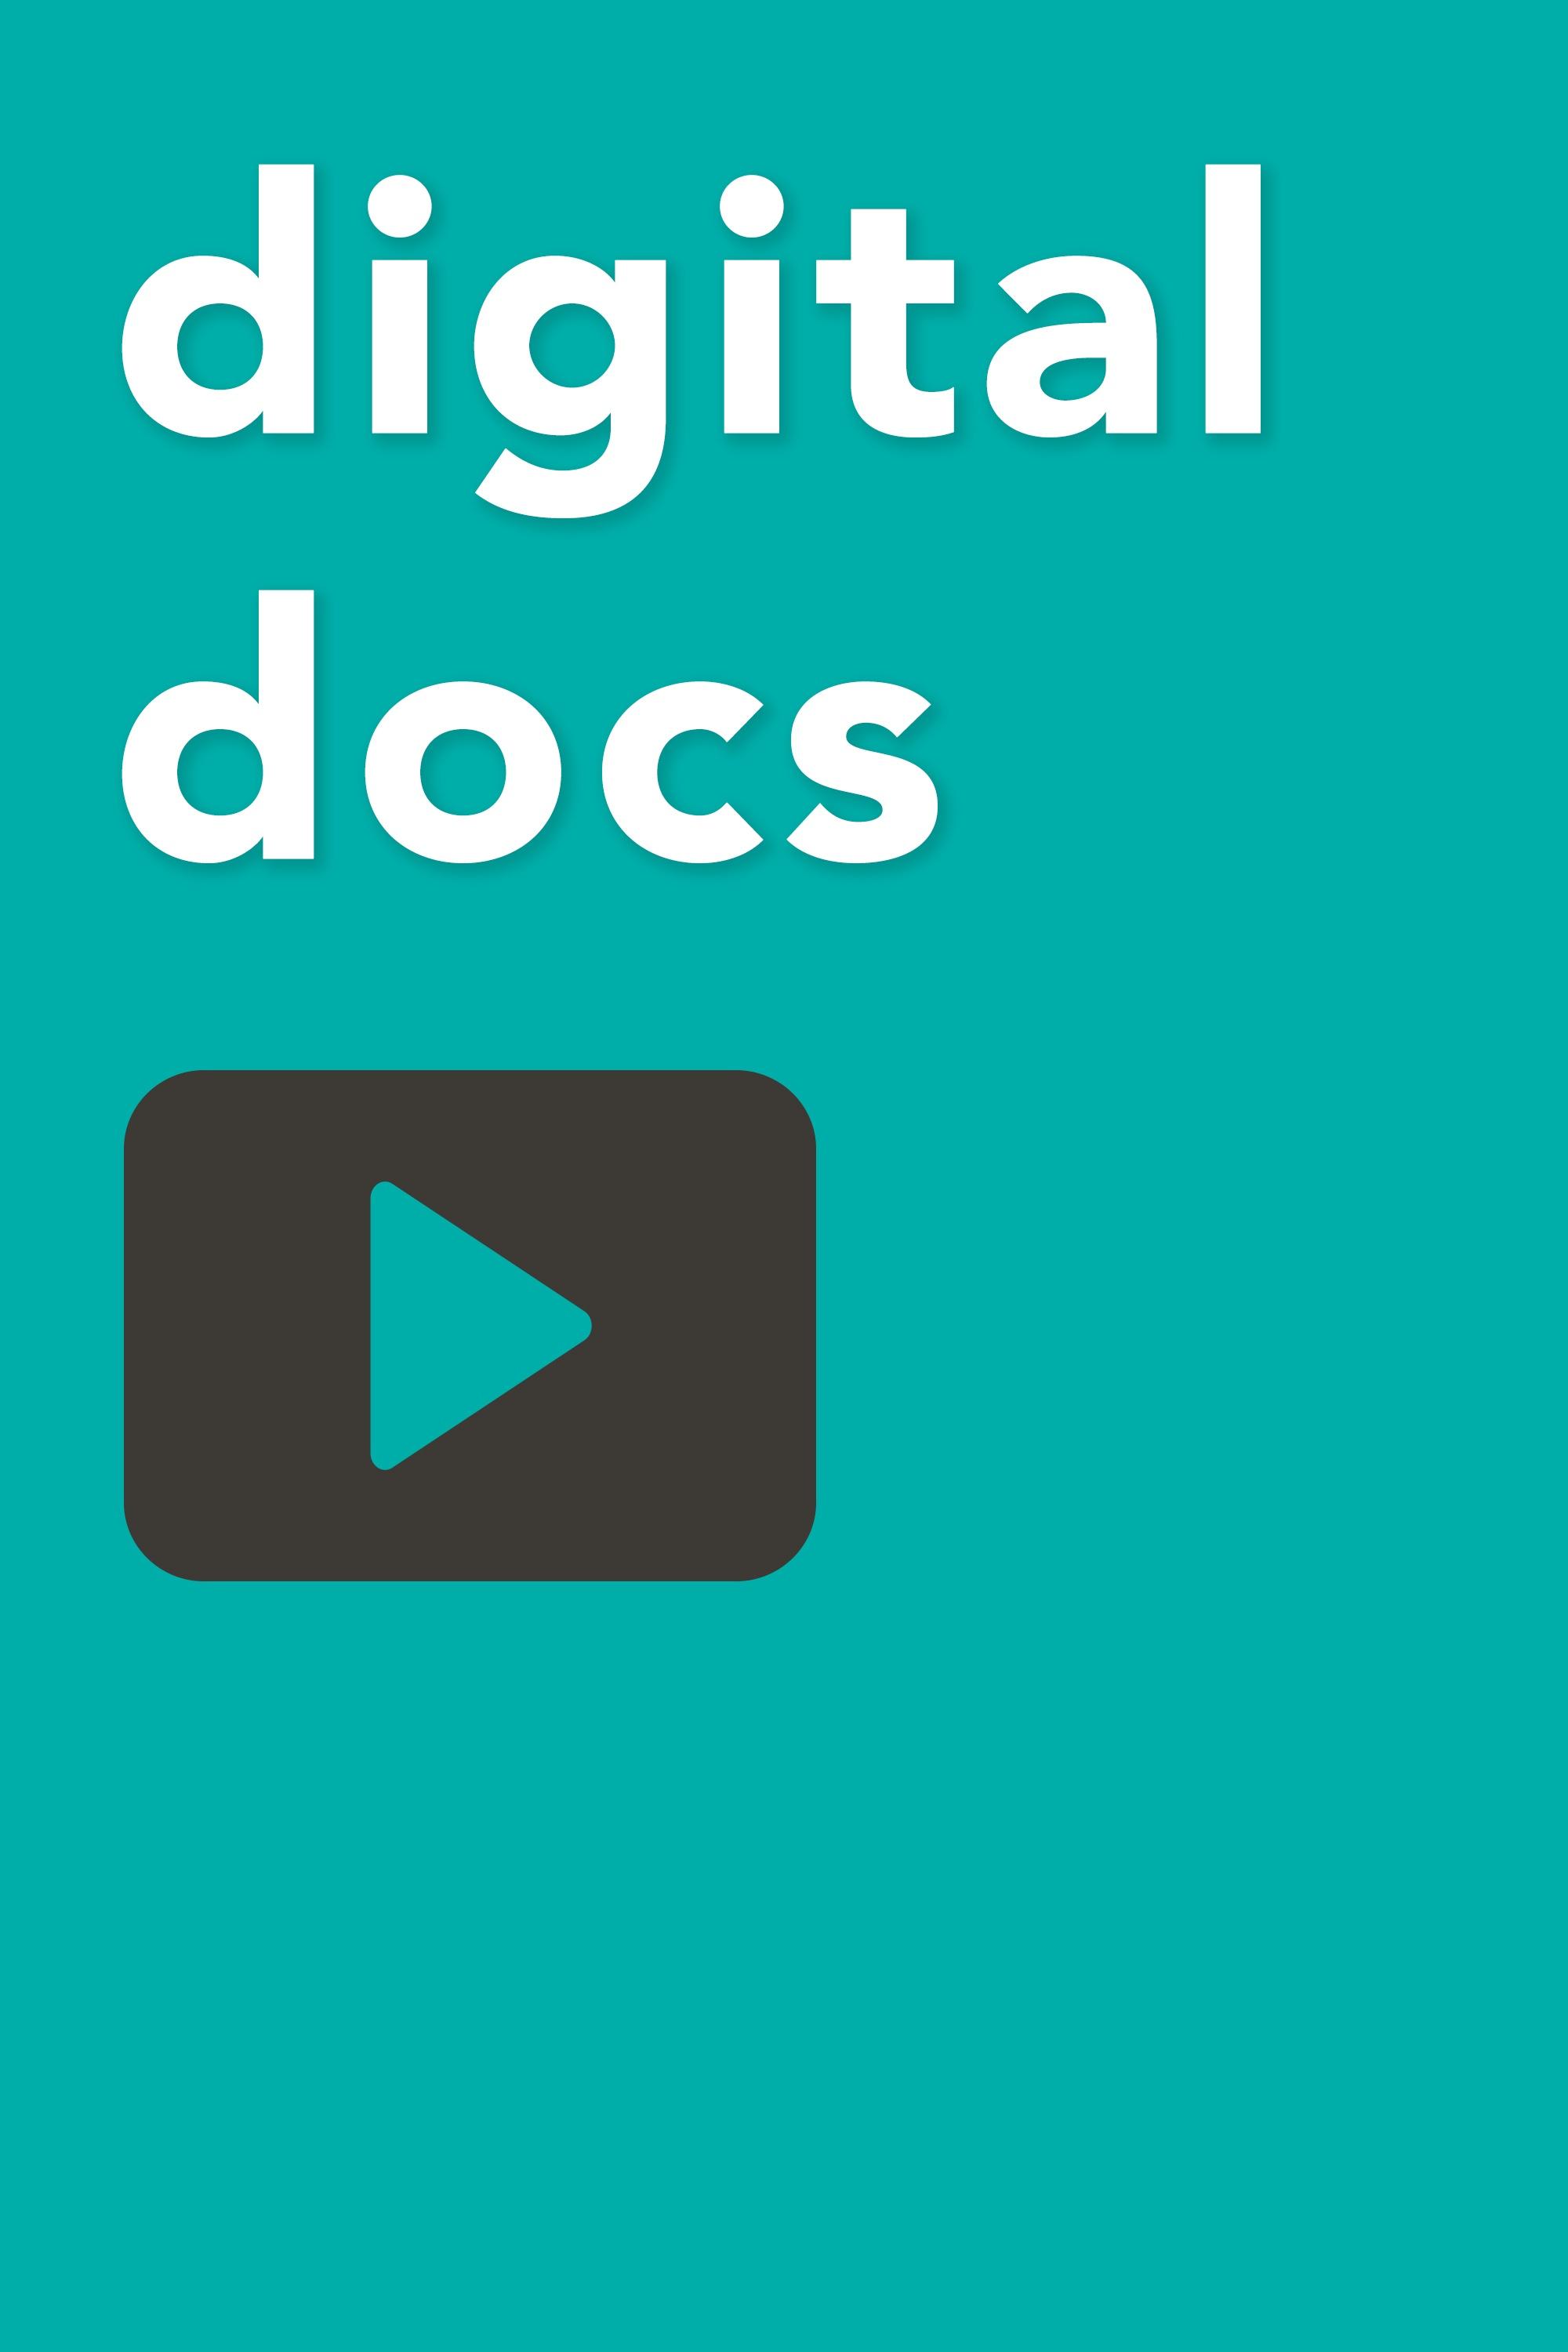 WQED Digital Docs